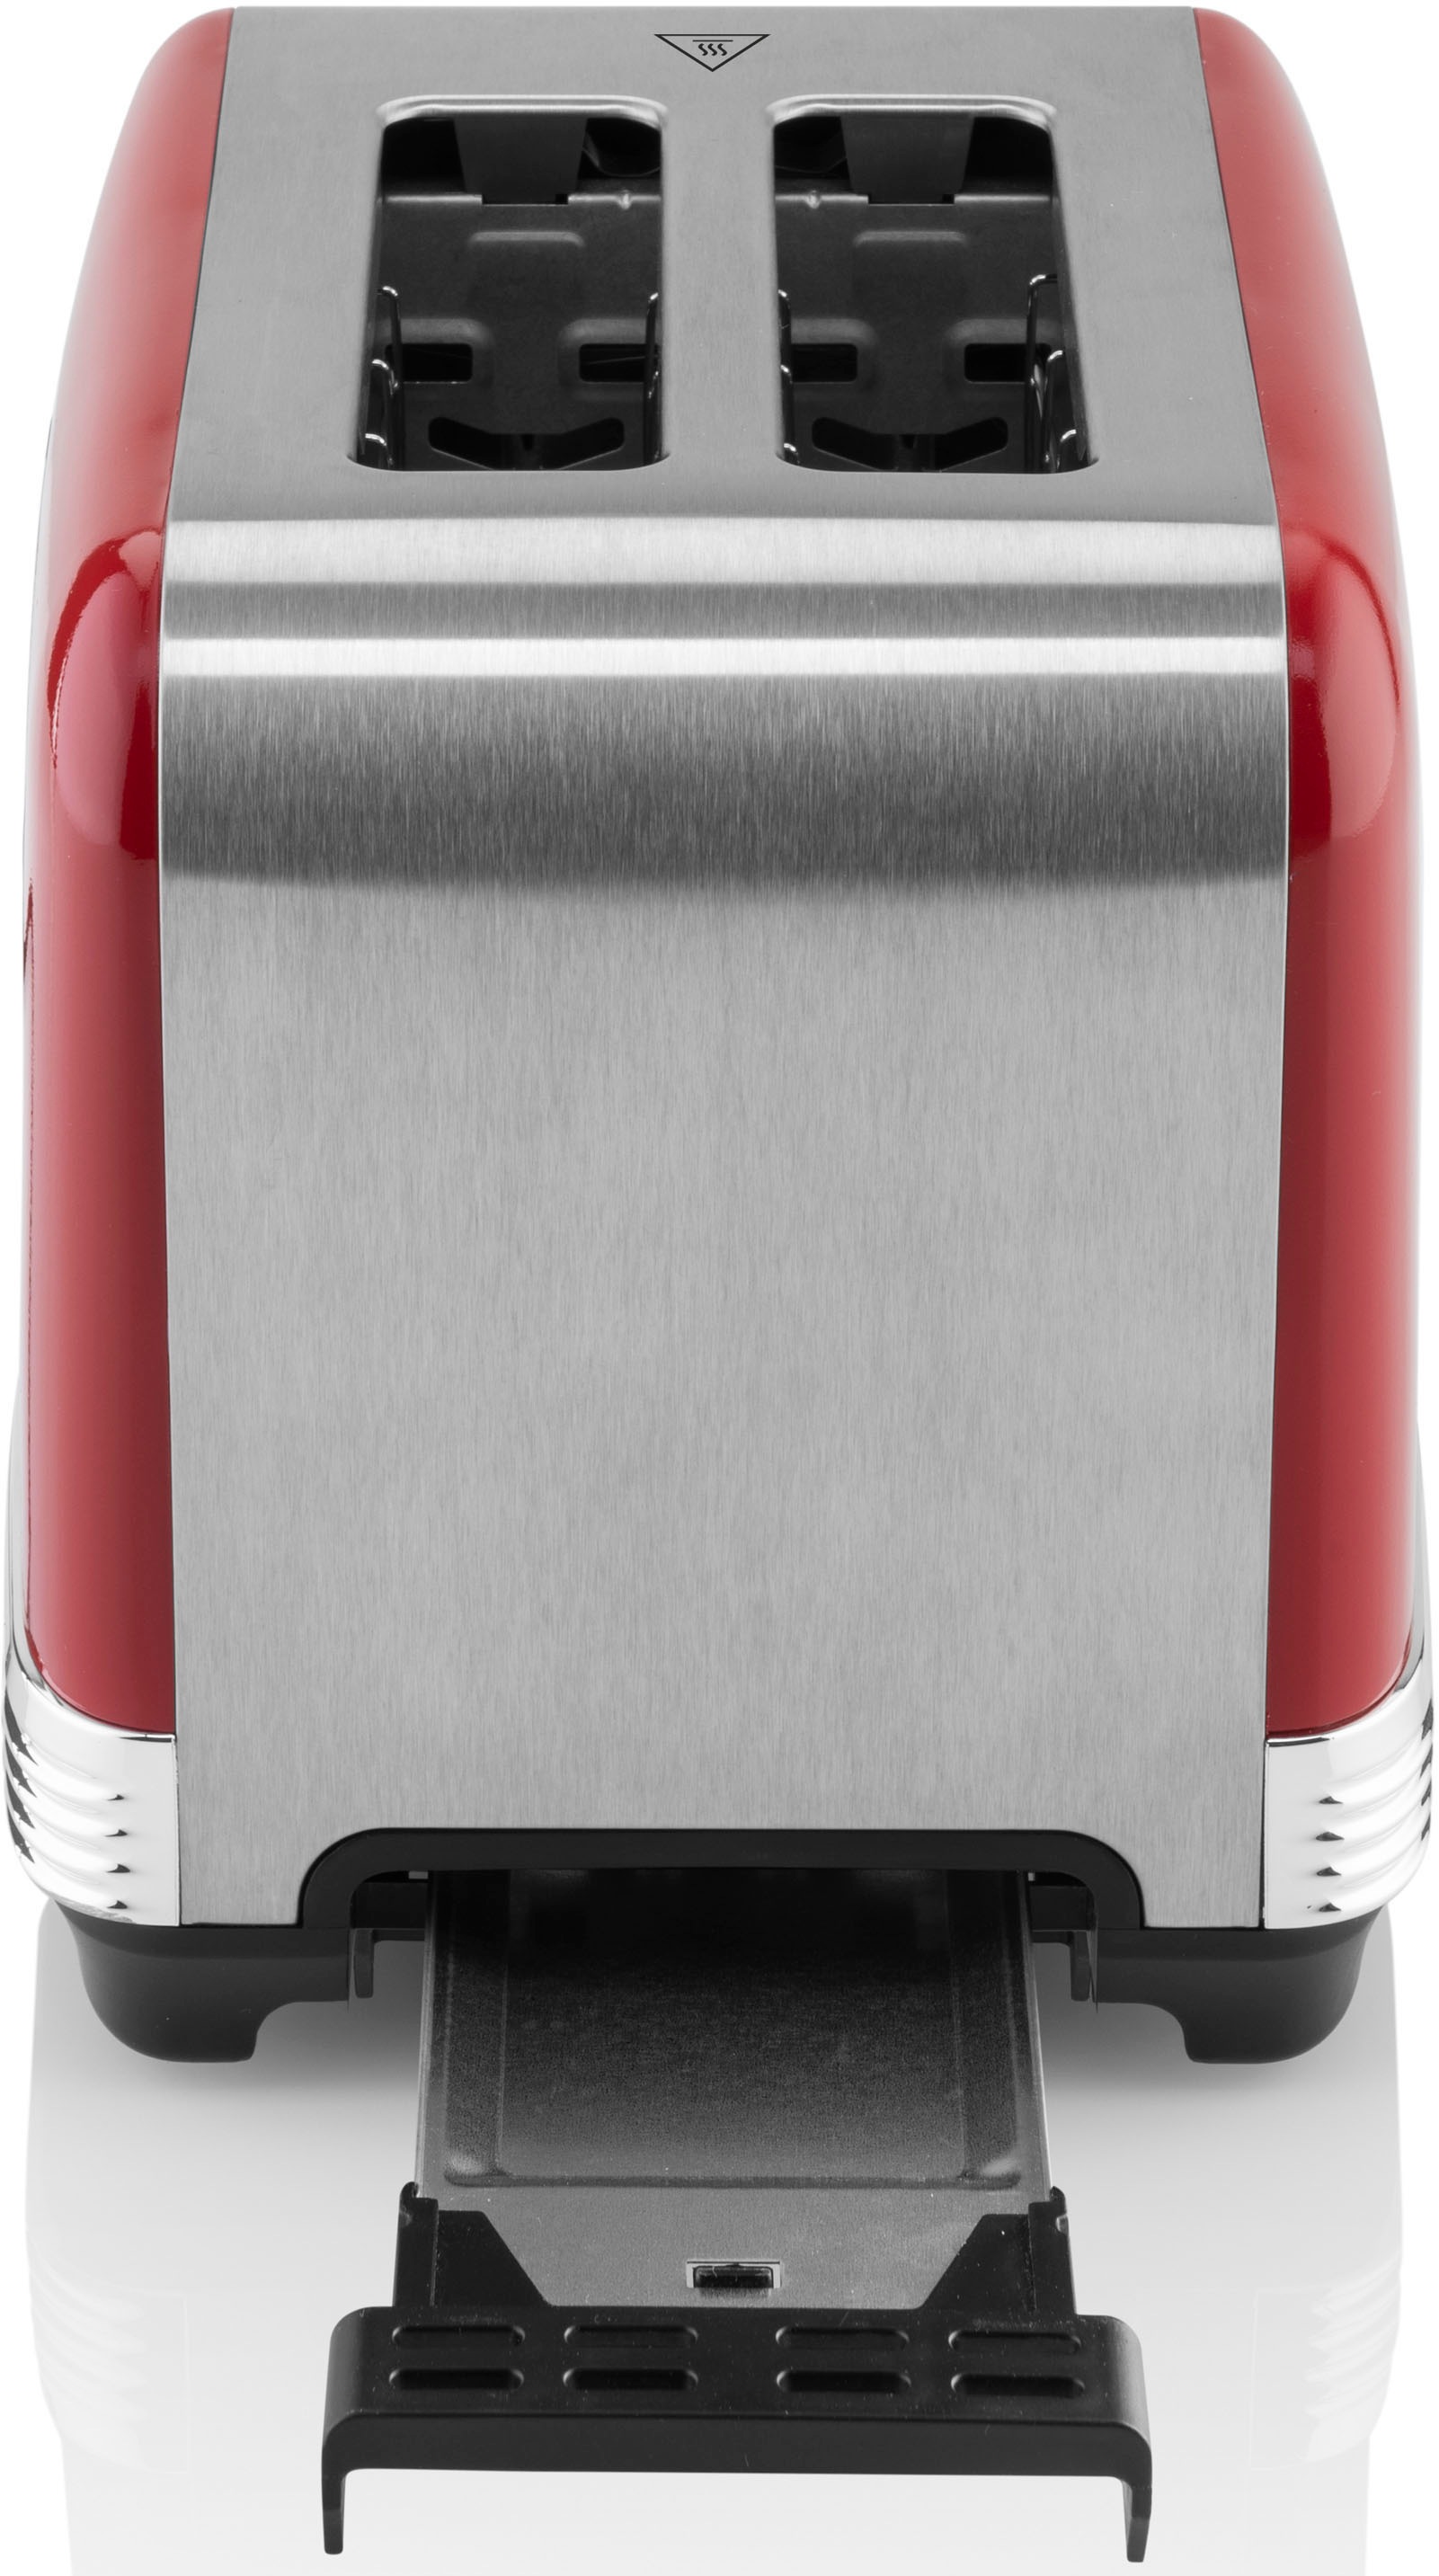 eta Toaster »STORIO ETA916690030«, 2 kurze Schlitze, 980 W, 7 Bräunungsstufen